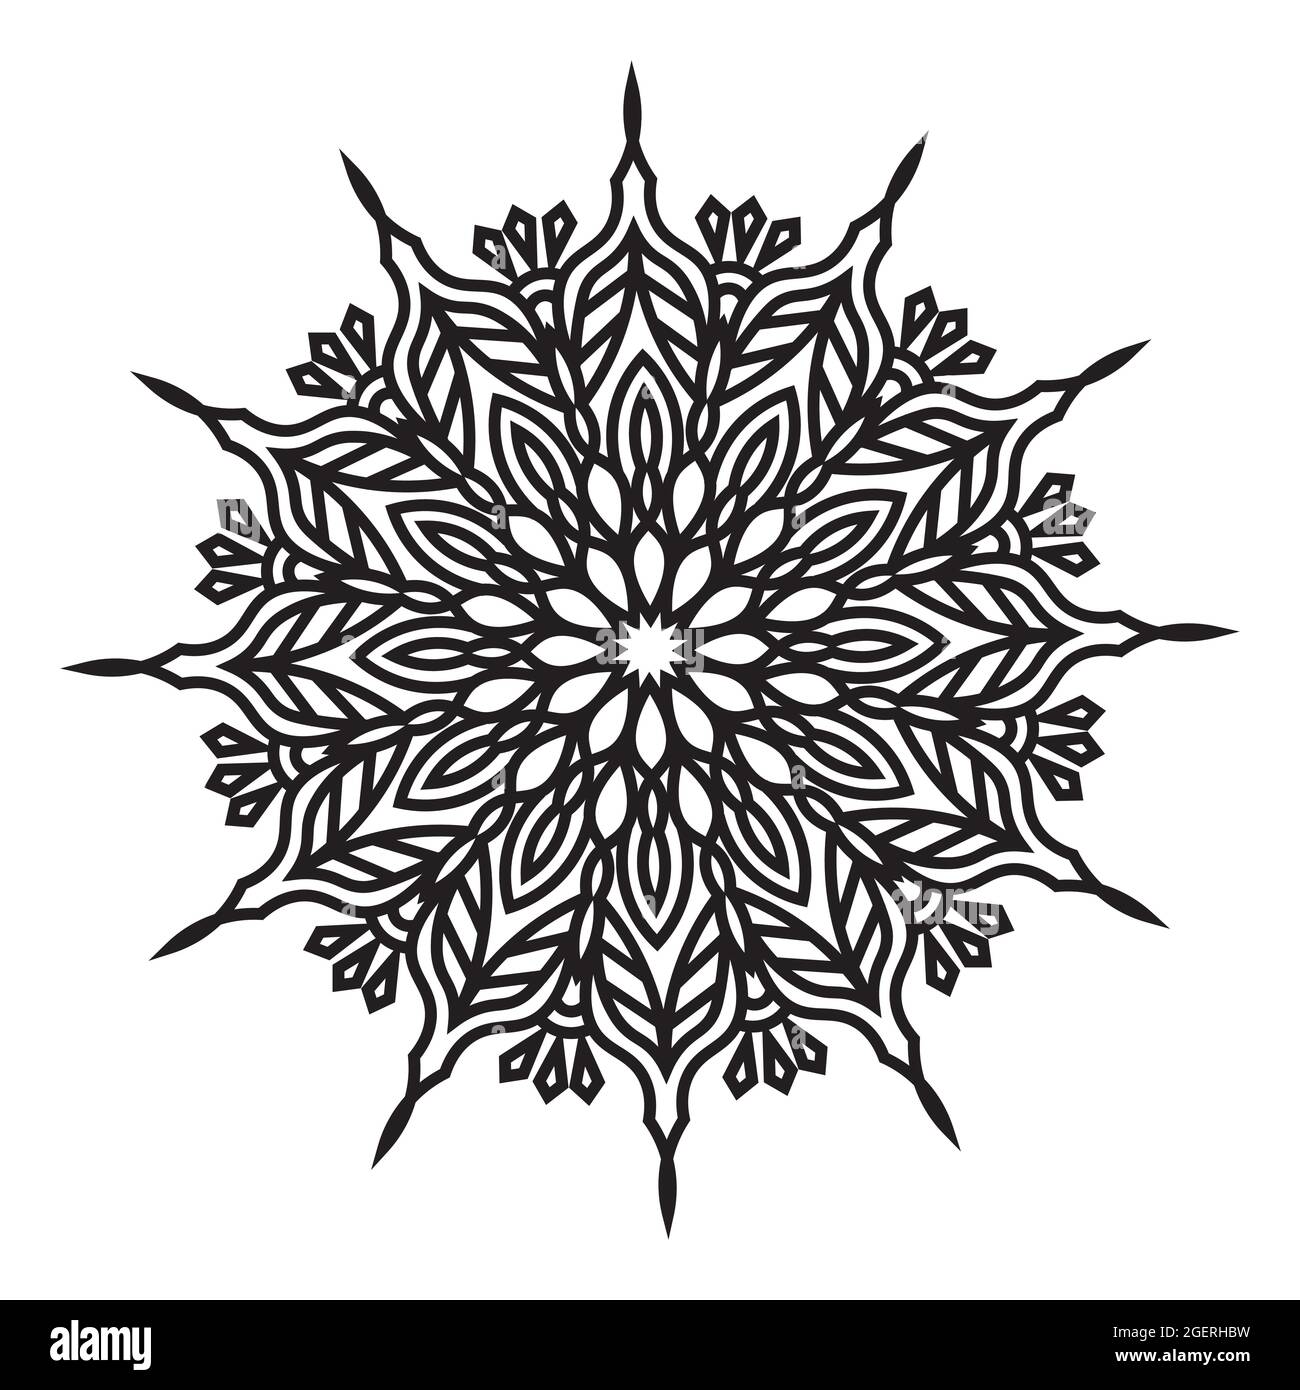 islamisch elegant rund abstrakt isoliert Hintergrund Design Mandala Blumenmuster Grafik für Stoff drucken Kunstwerk Stock Vektor